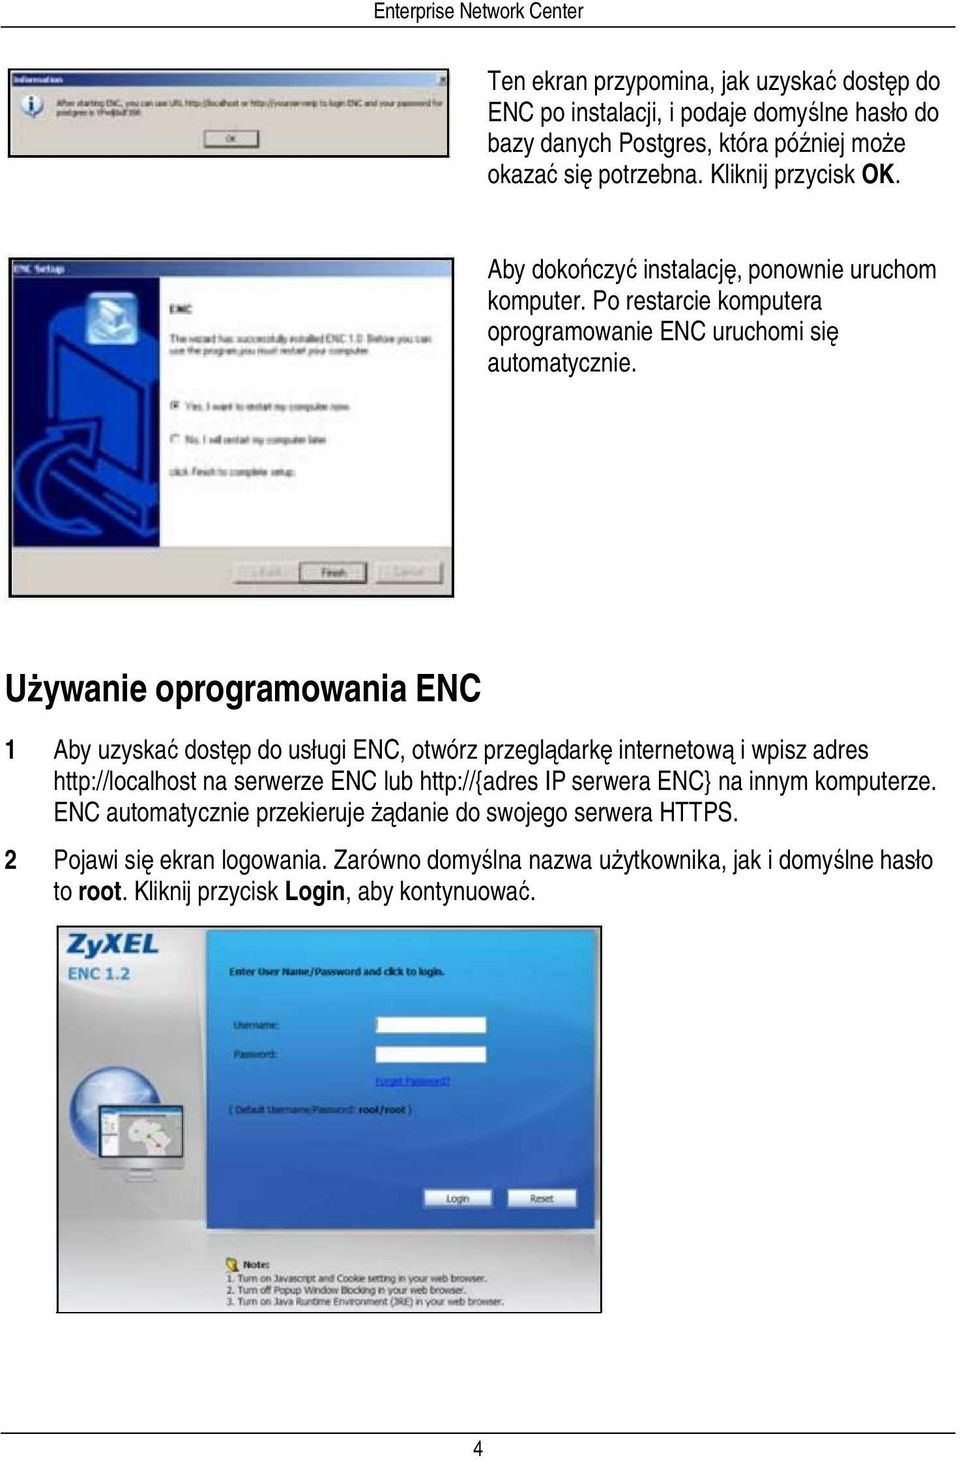 Używanie oprogramowania ENC 1 Aby uzyskać dostęp do usługi ENC, otwórz przeglądarkę internetową i wpisz adres http://localhost na serwerze ENC lub http://{adres IP serwera